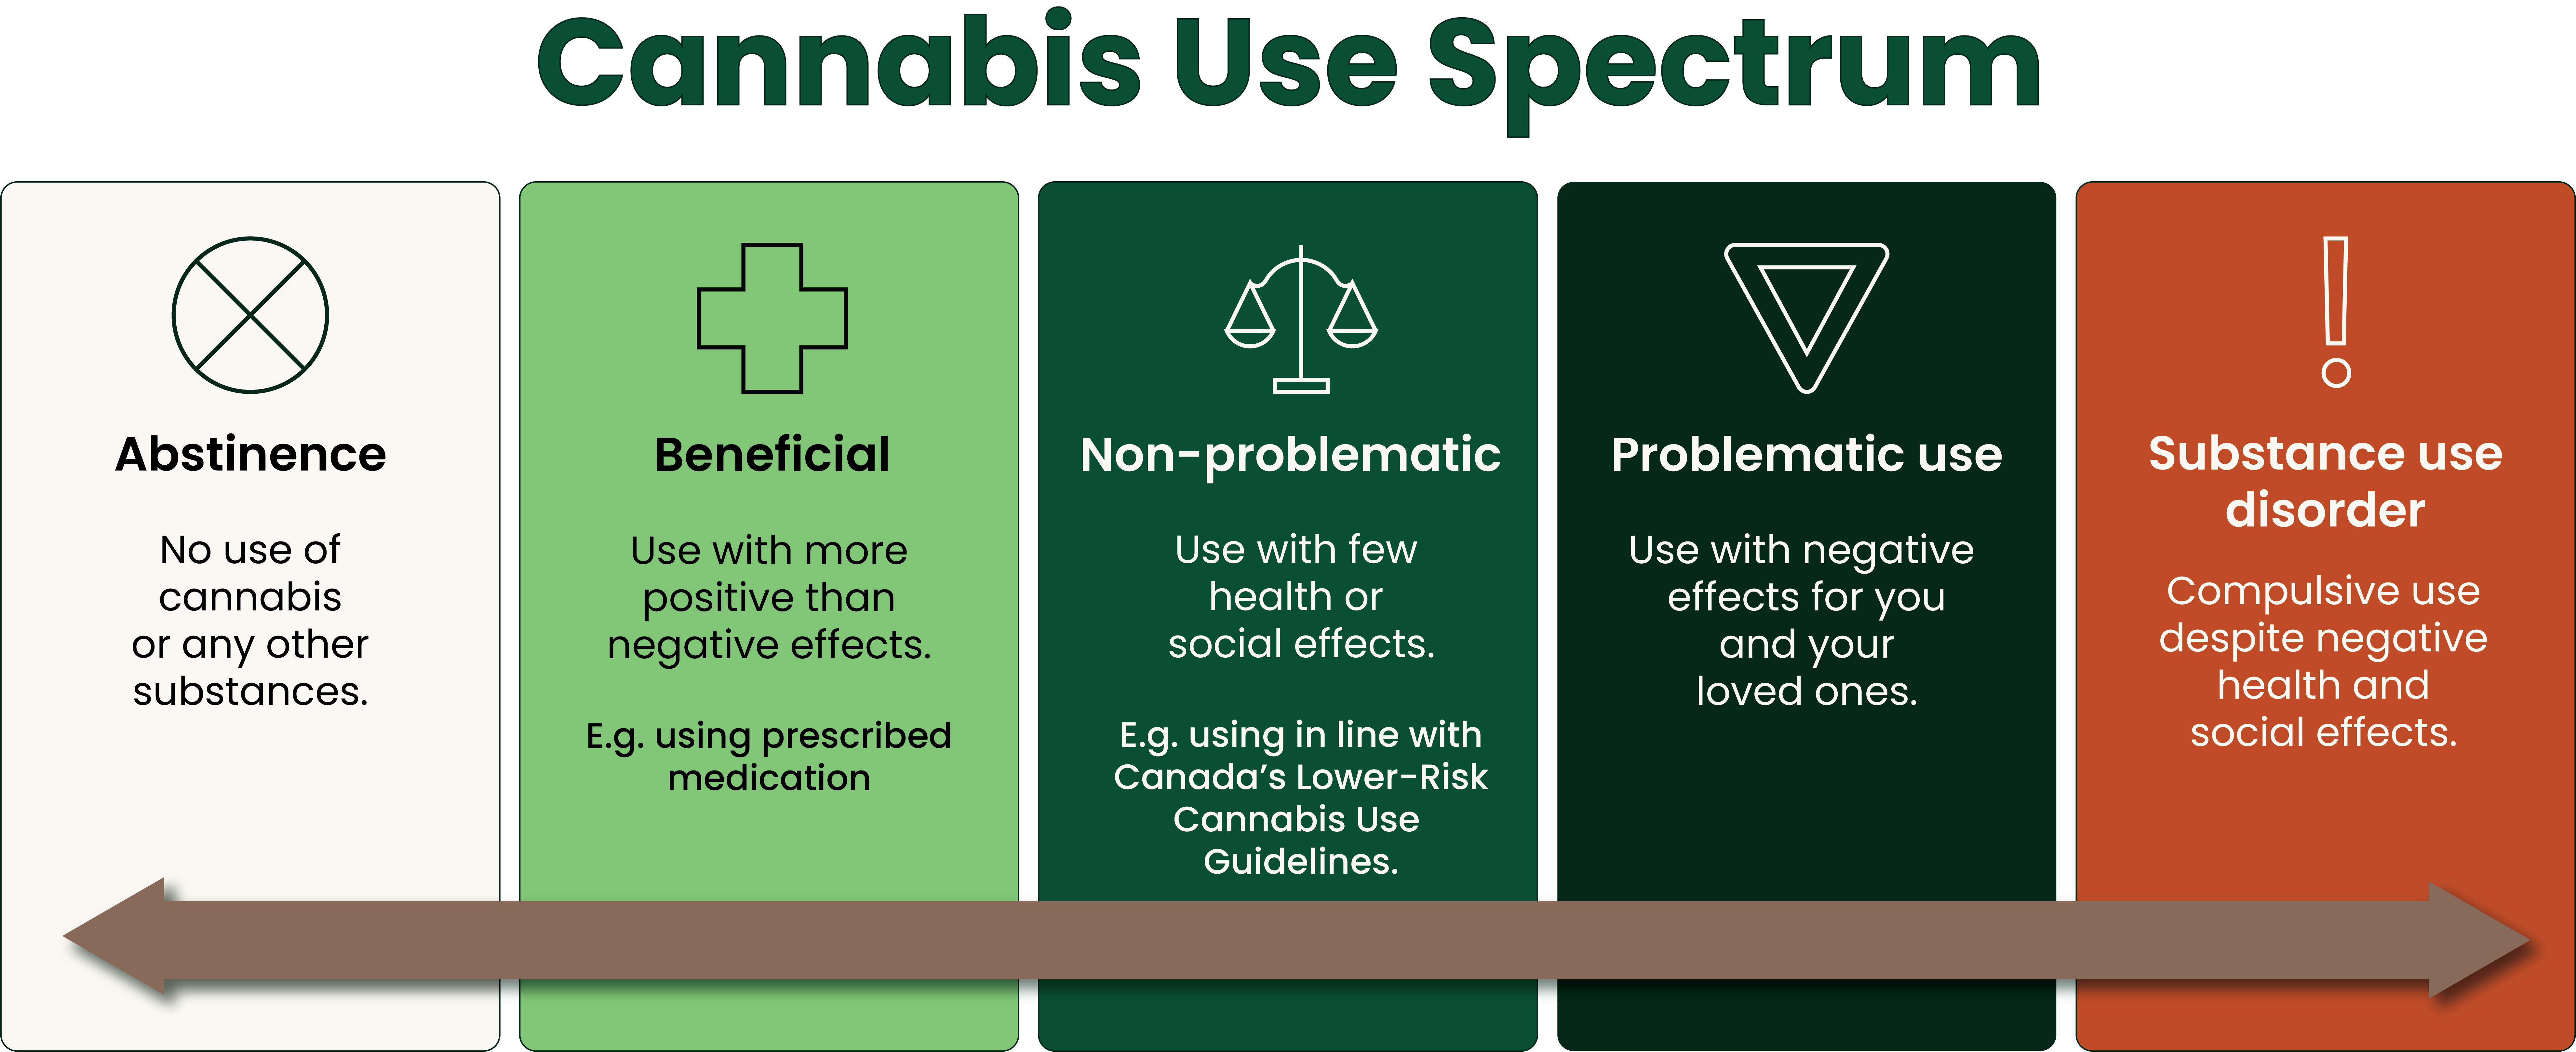 Cannabis use spectrum 